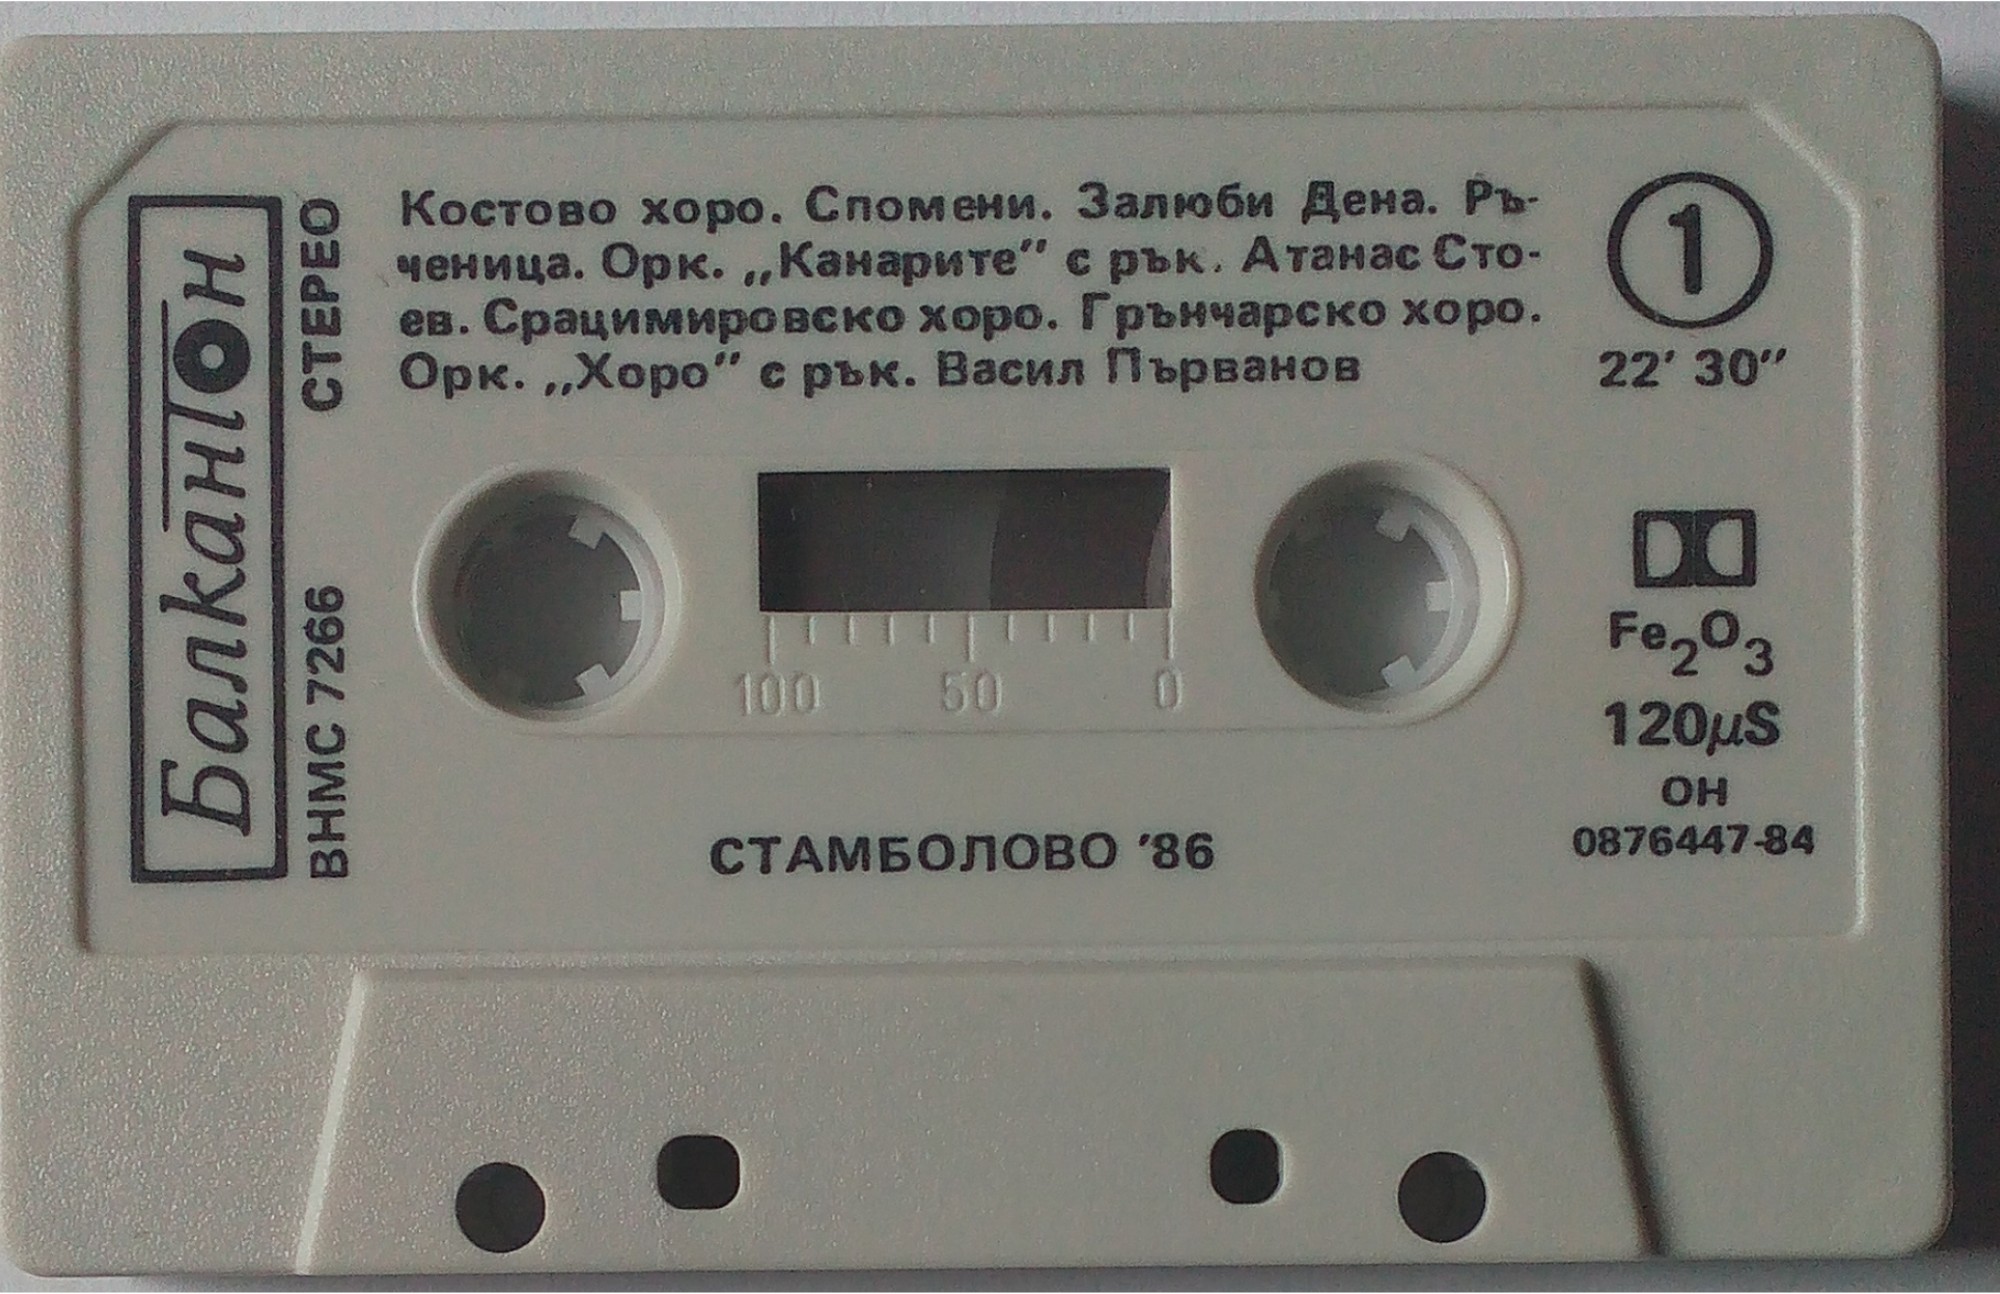 Стамболово '86 (2)